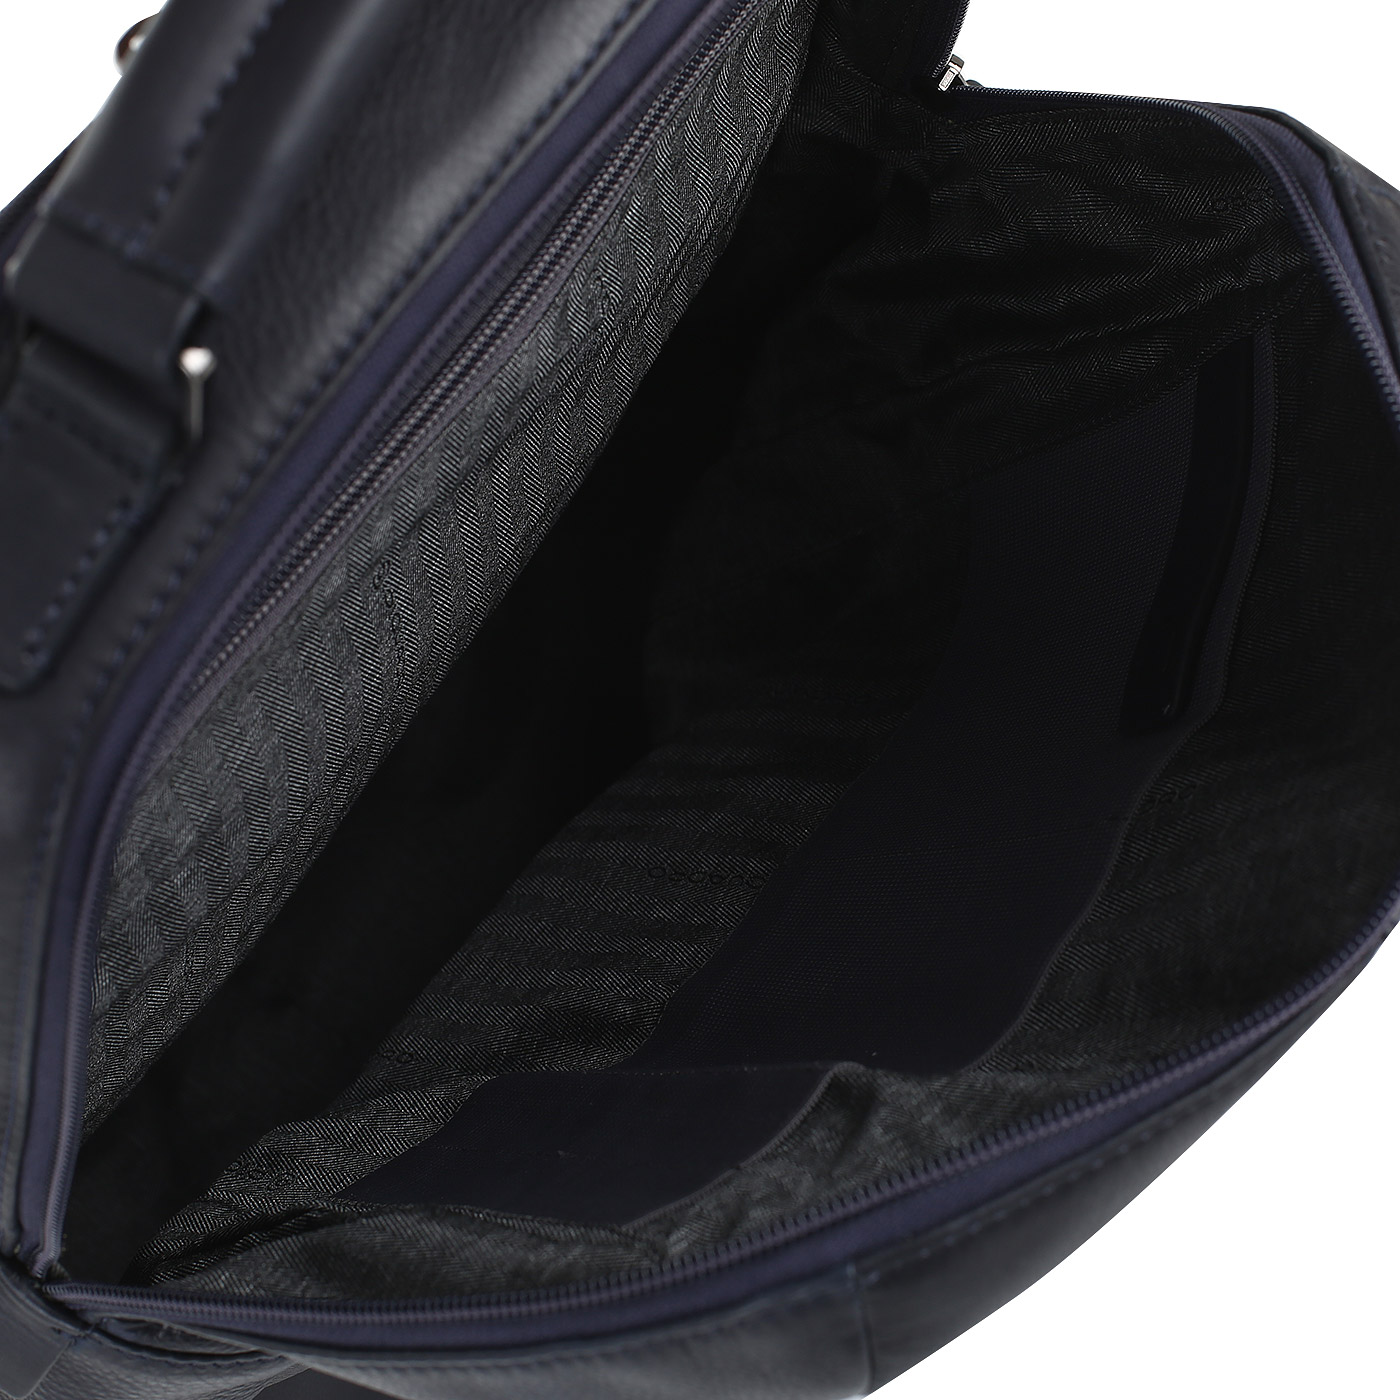 Рюкзак с креплением на ручку чемодана Piquadro Bae